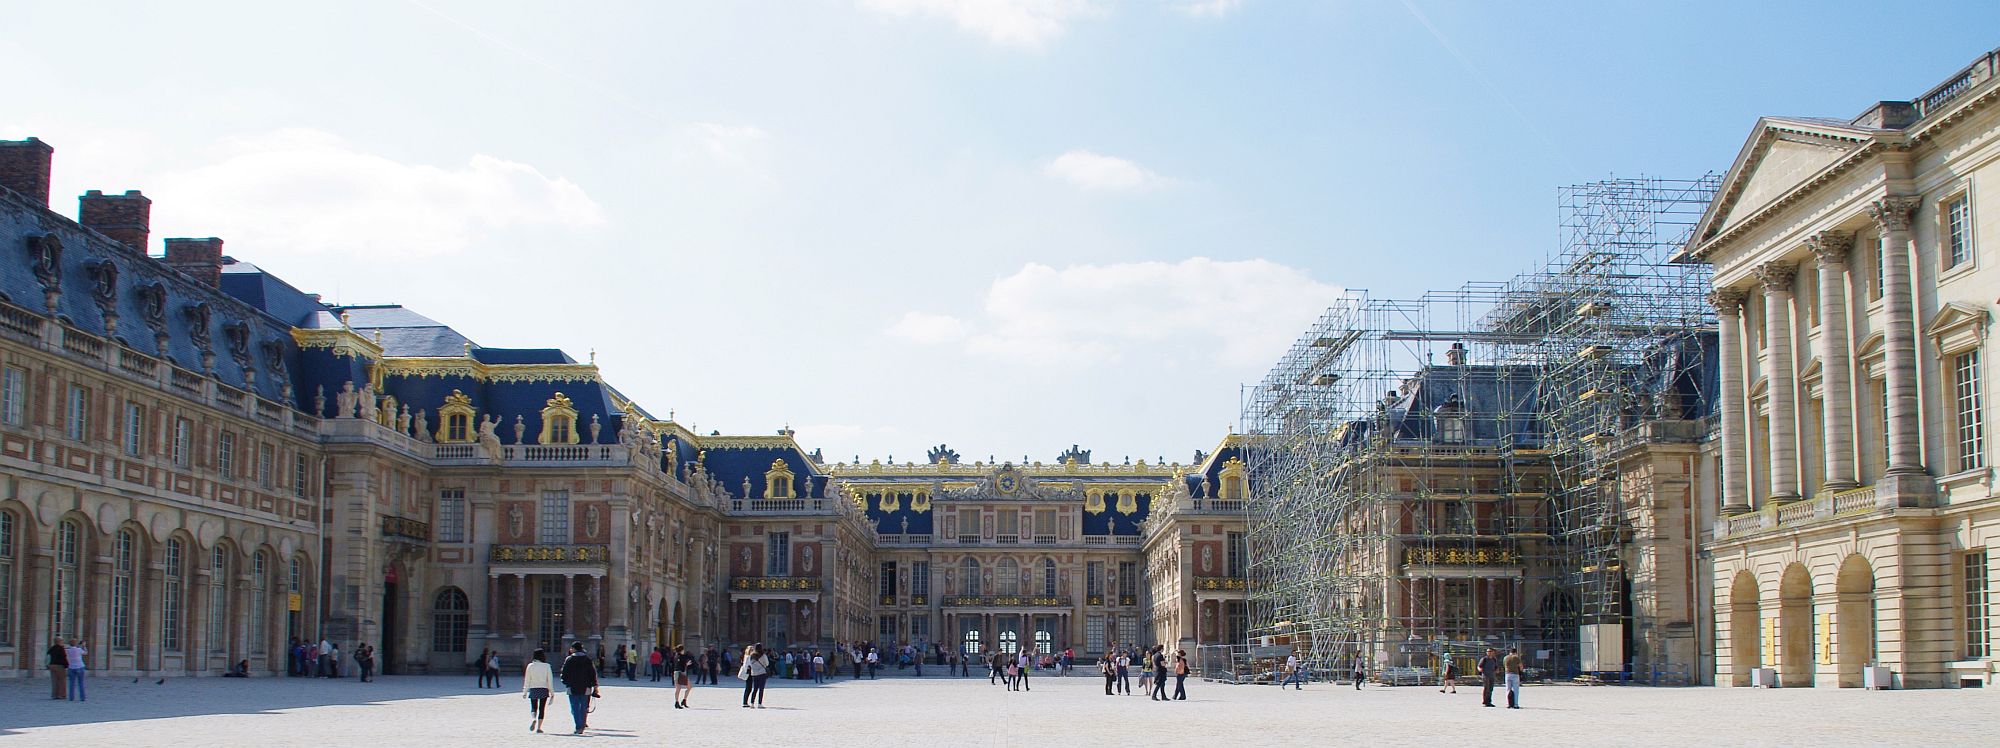 世界遺産 ヴェルサイユ宮殿と庭園 概要 近代文化遺産見学案内所